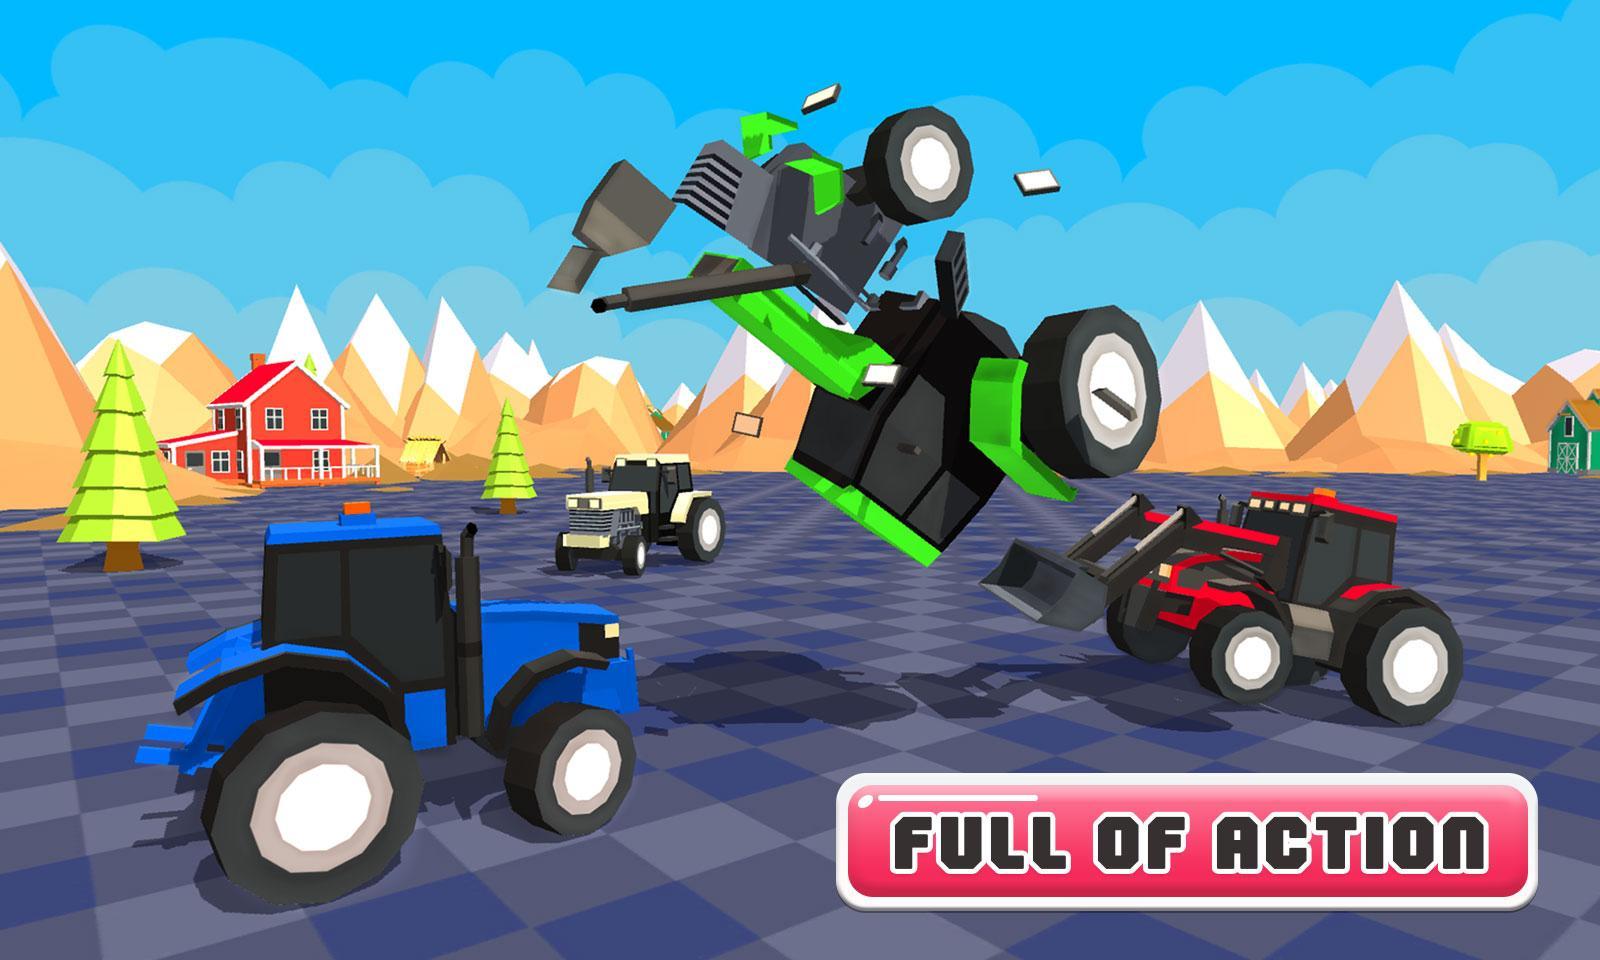 Screenshot 1 of Batalla de tractores de juguete Guerras finales 1.0